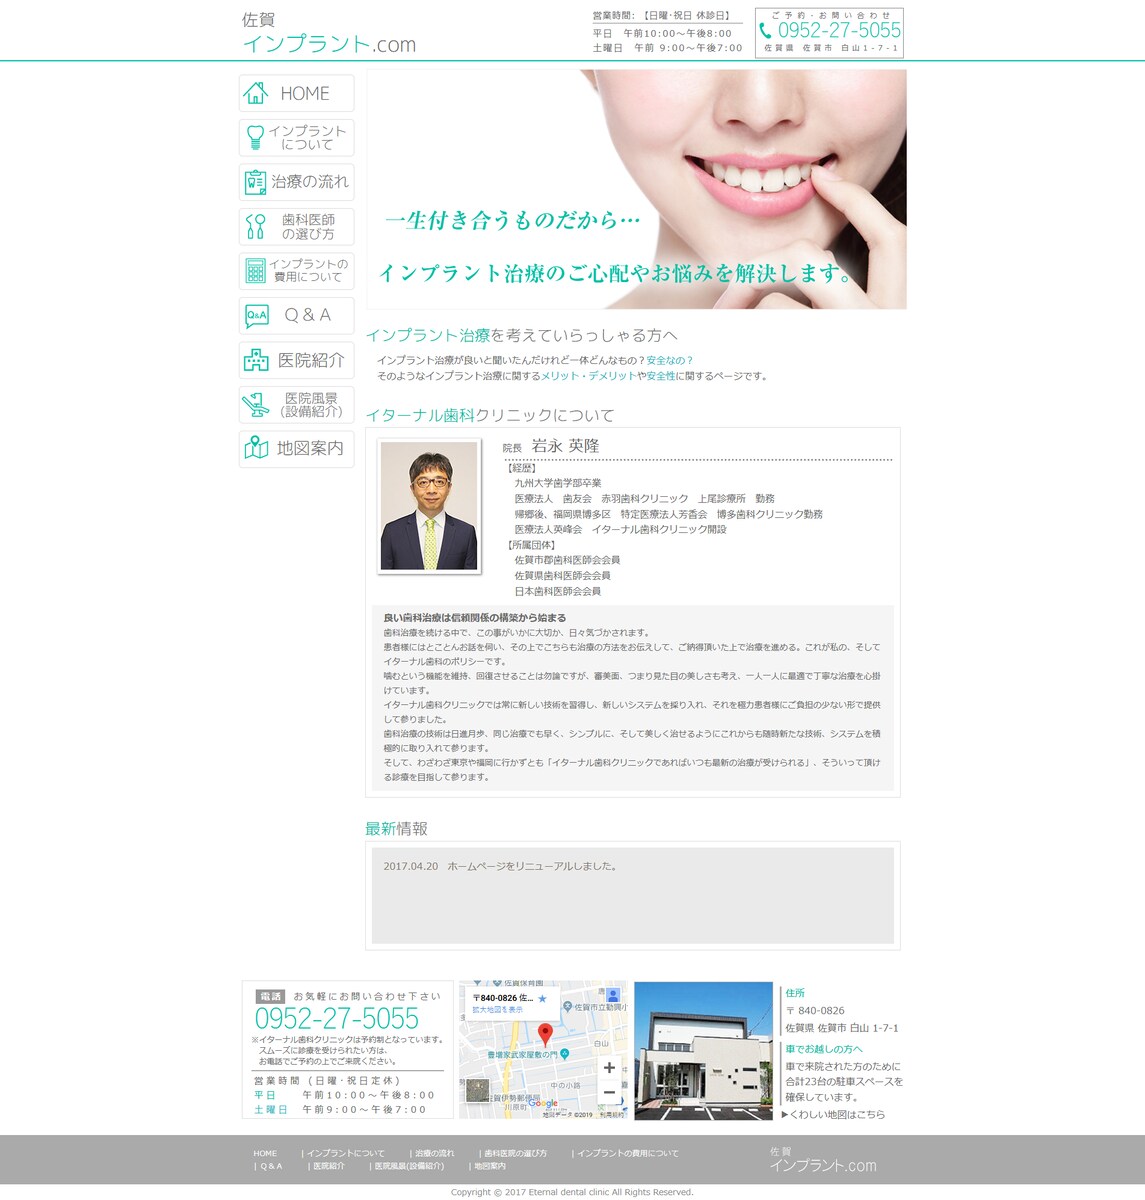 佐賀インプラント.comさまのサイトです。